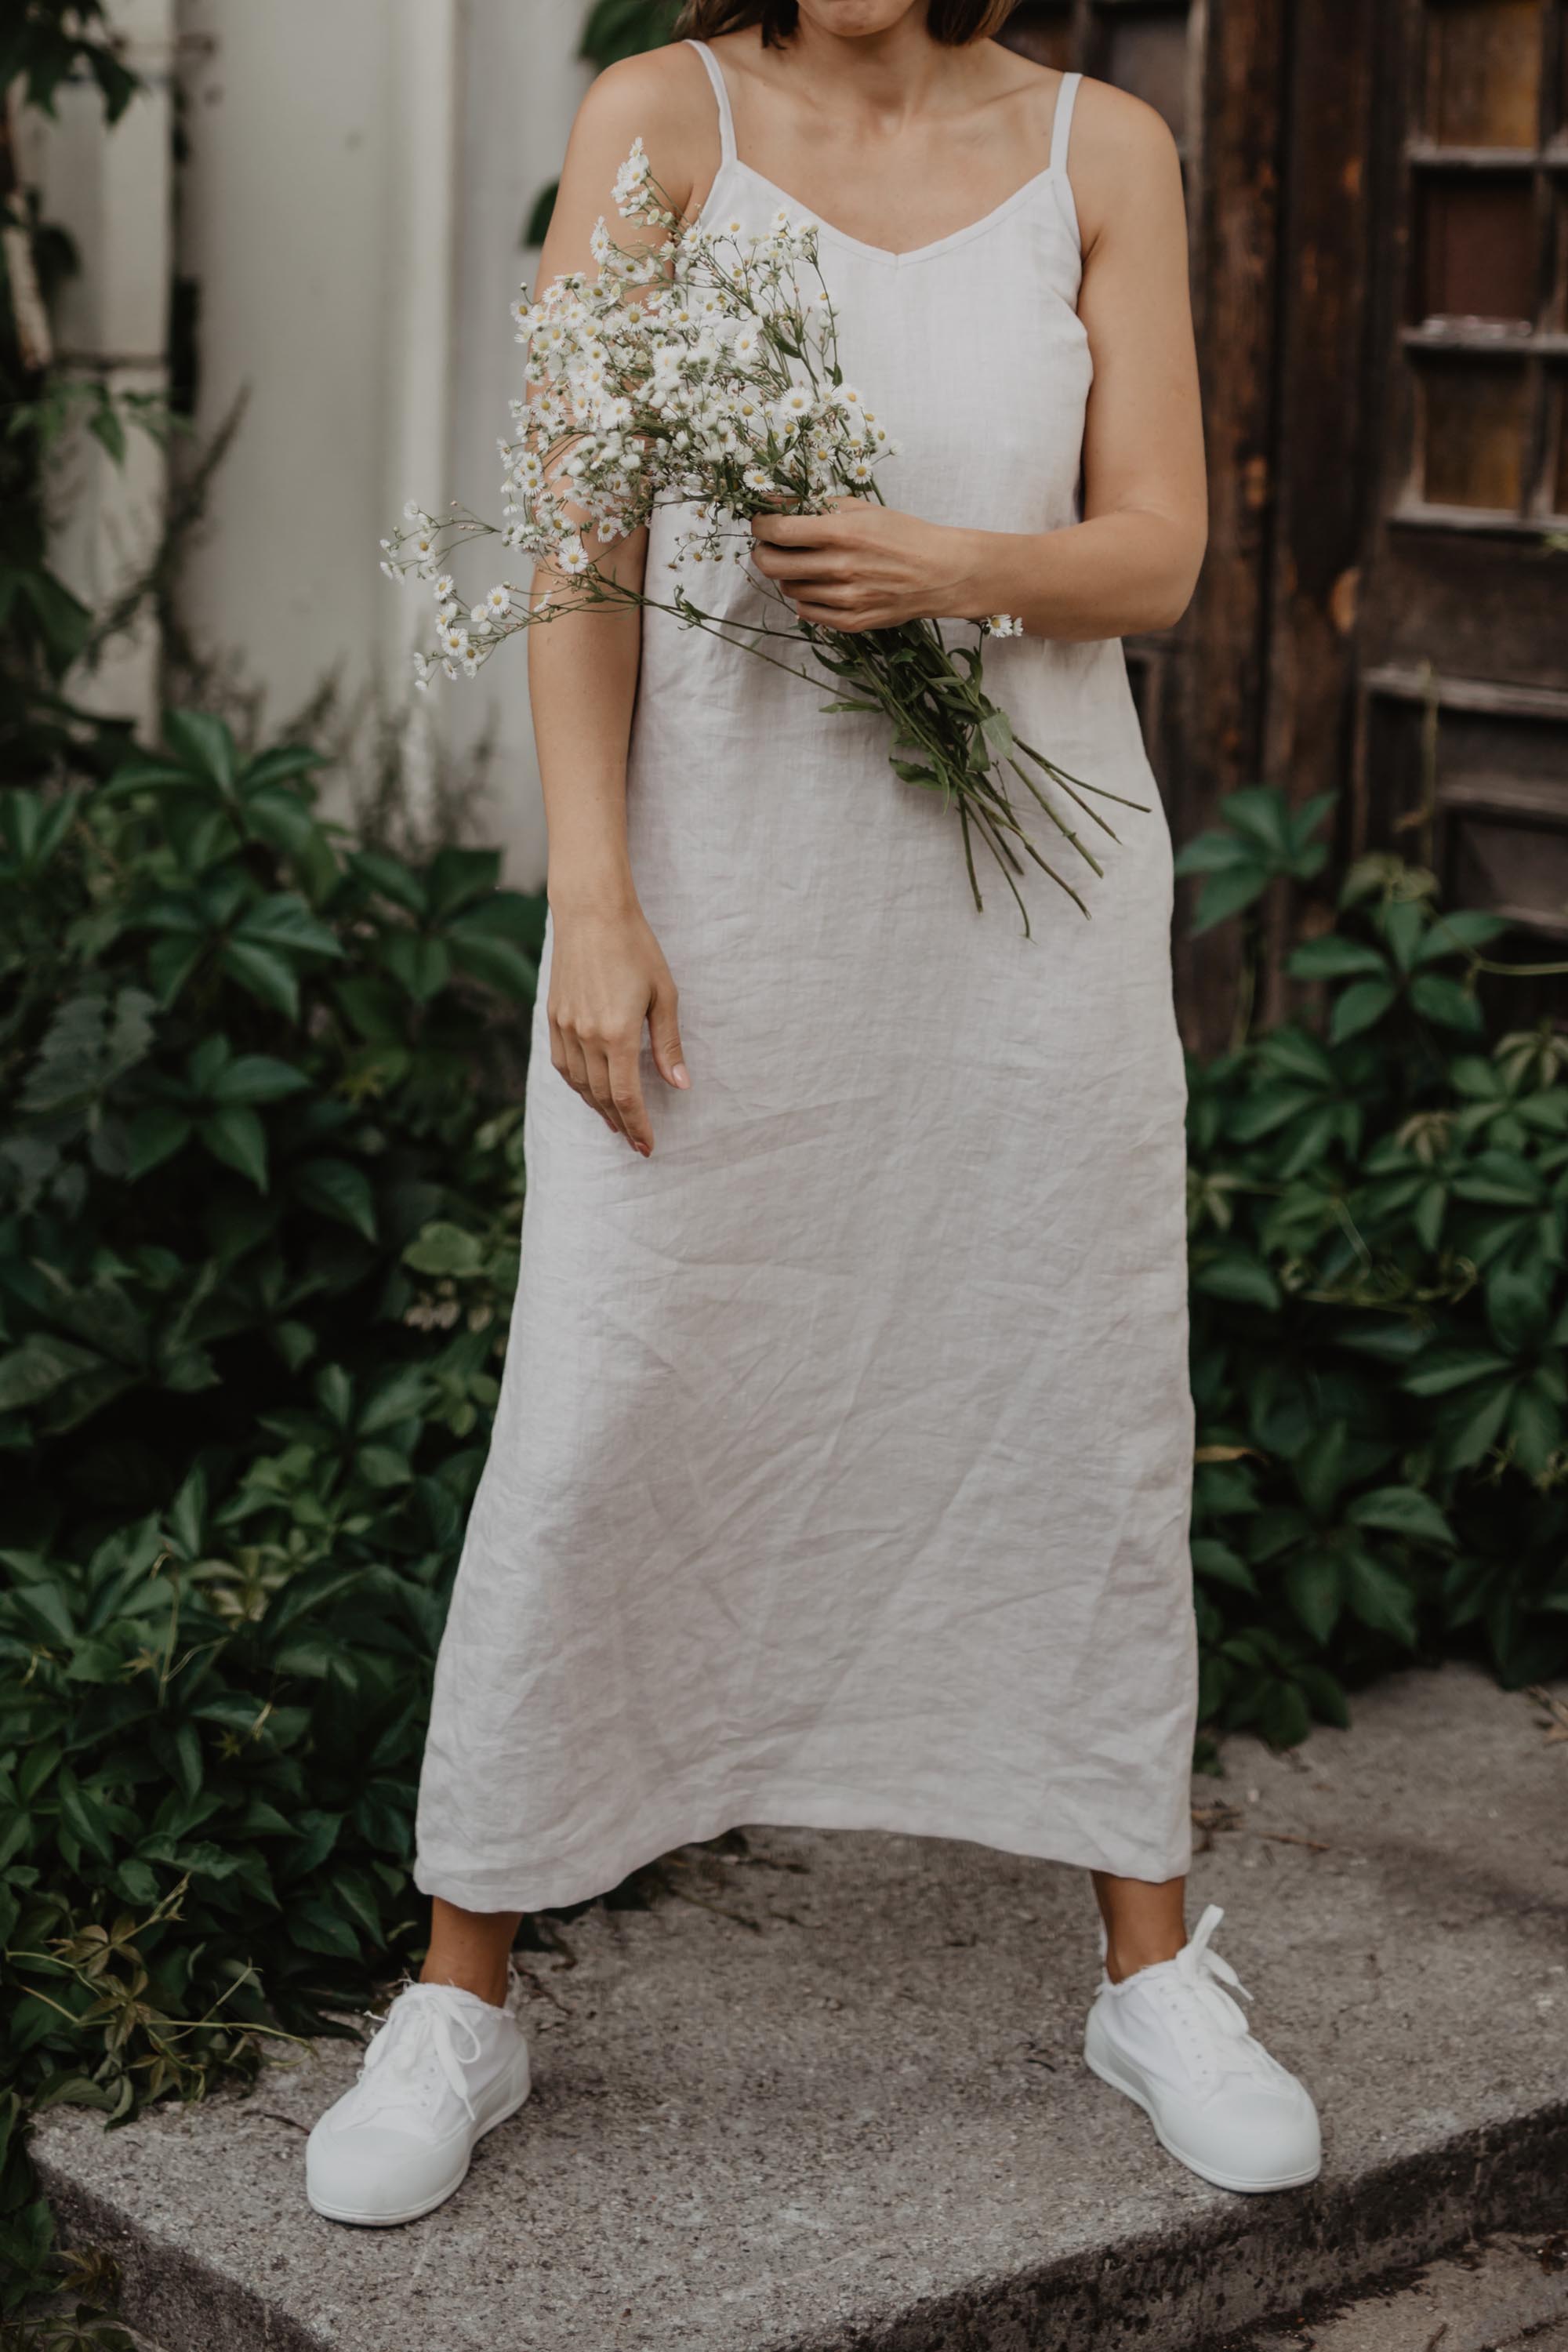 Wopman Holding Flowers Wearing A White Linen Dress